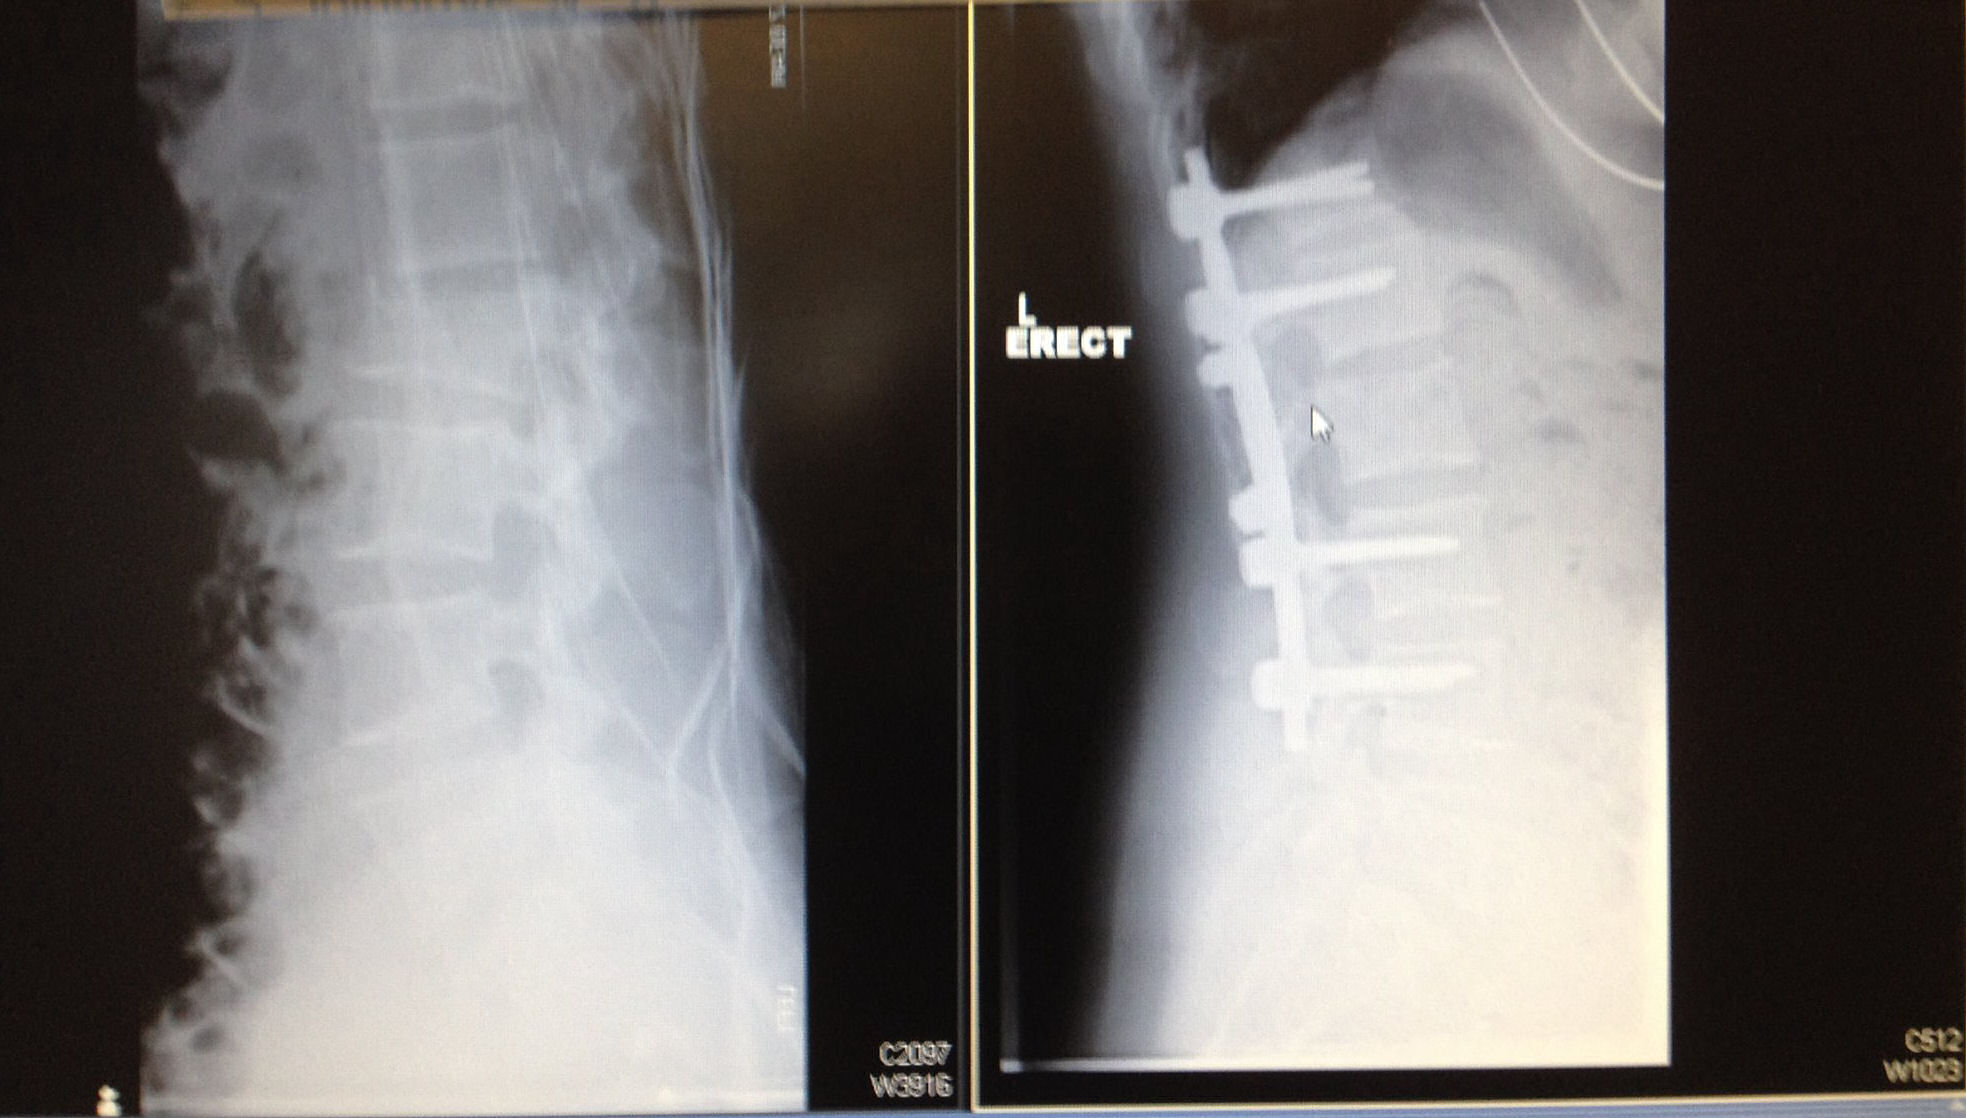 sharon fractured spine xray ibt